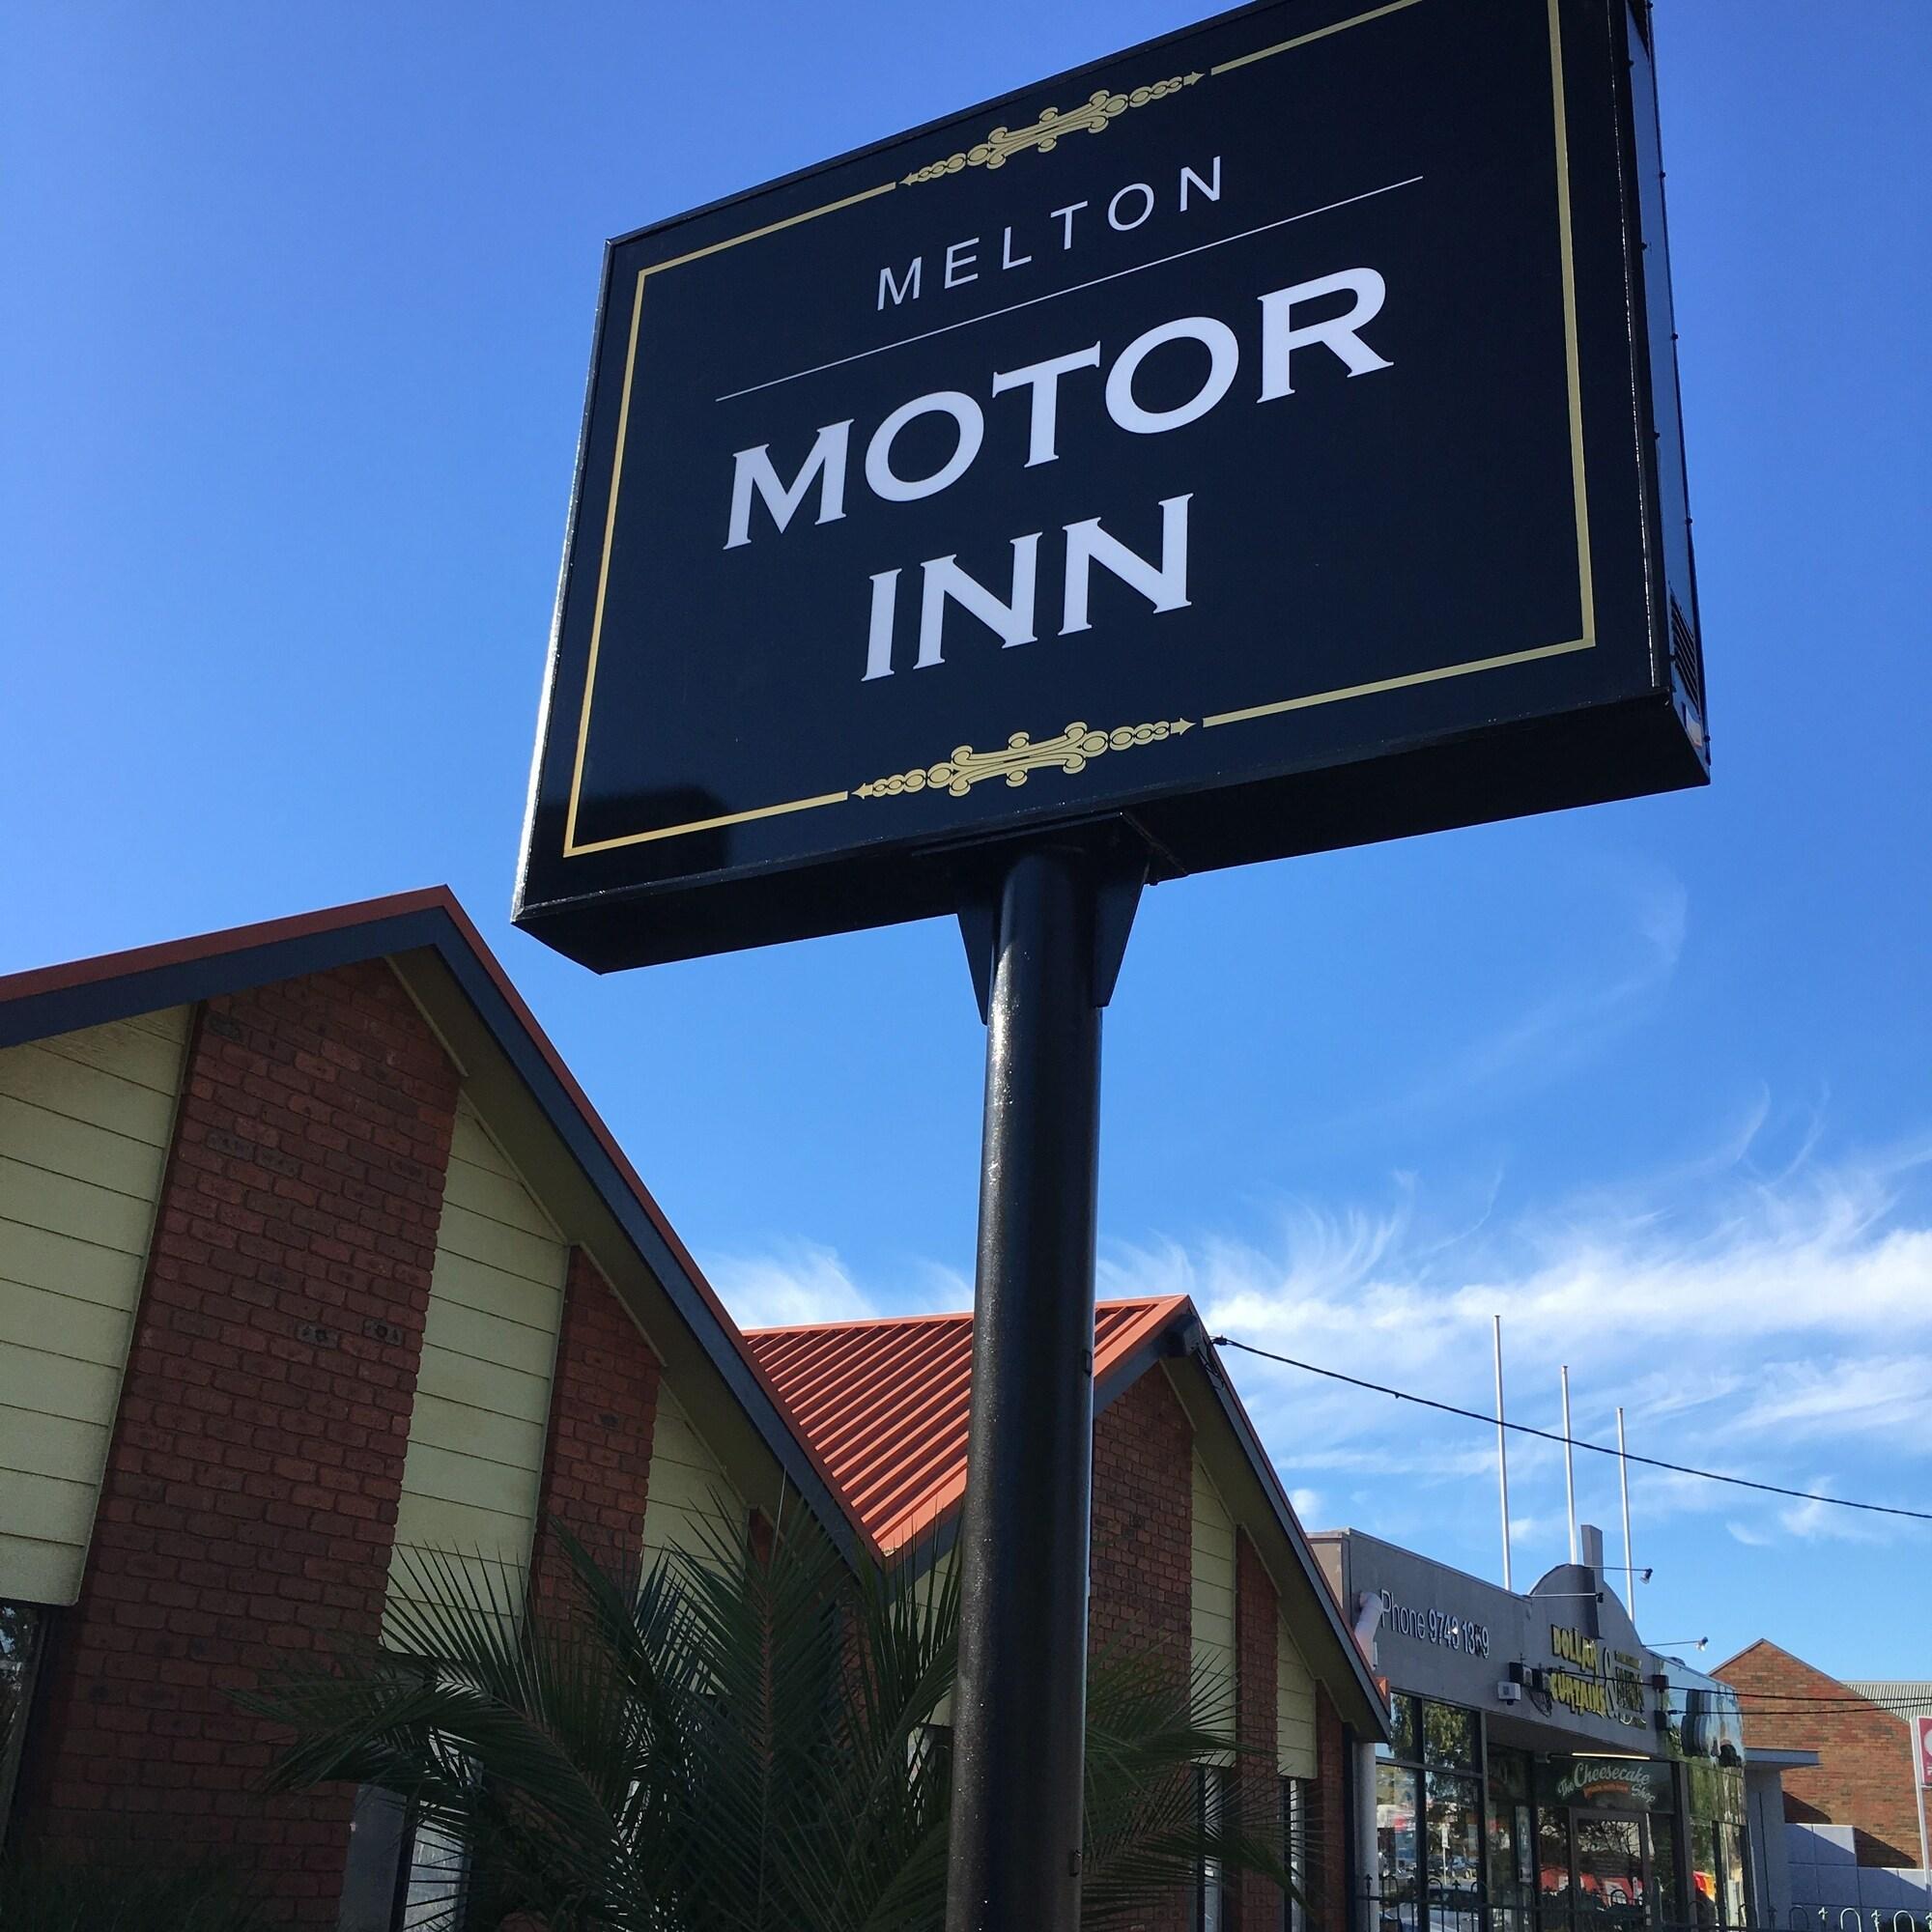 Melton Motor Inn image